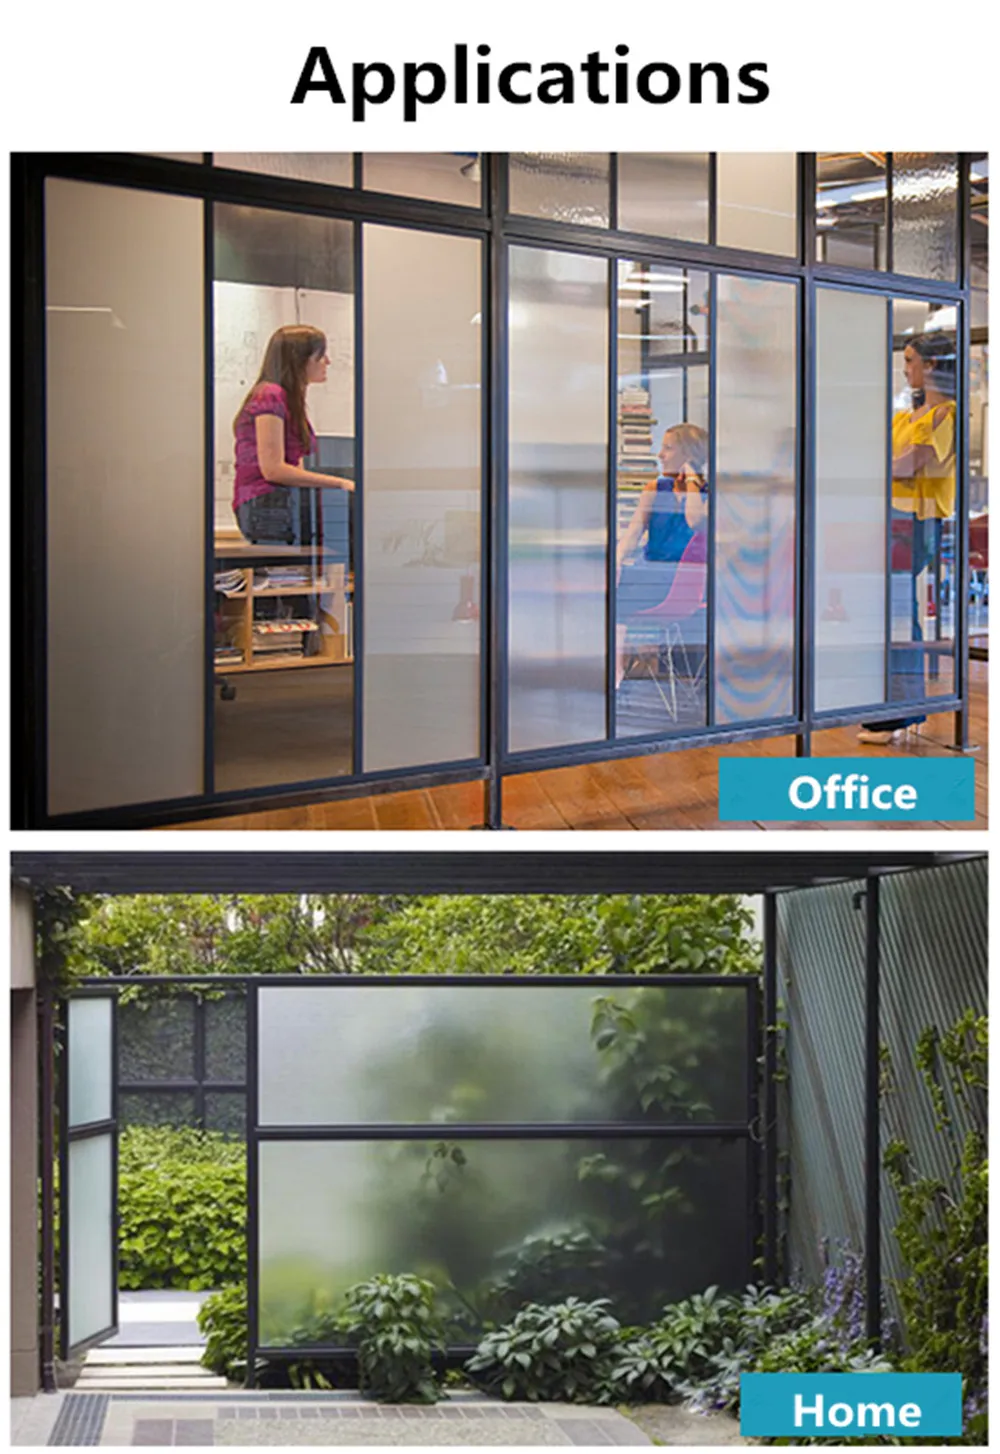 Пленка для окна SUNICE Frost: полупрозрачная обработка для домашней безопасности и декора, эффект непрозрачного стекла-без остатка, Легкая съемка